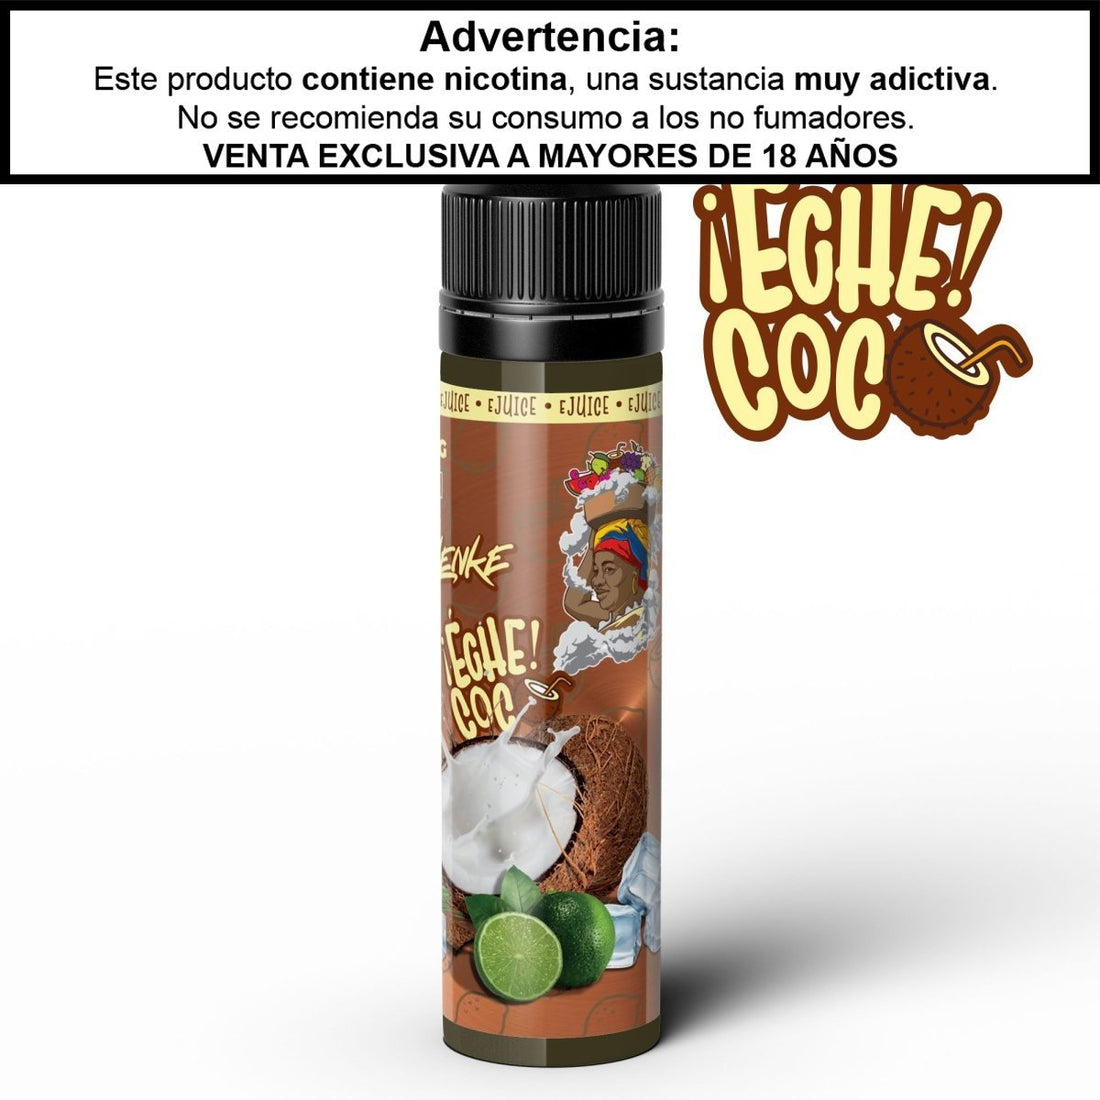 ¡Eche Coco! - Palenke Ejuice - Eliquid - DIY VAPE SHOP | BL-PLK-ECH-00